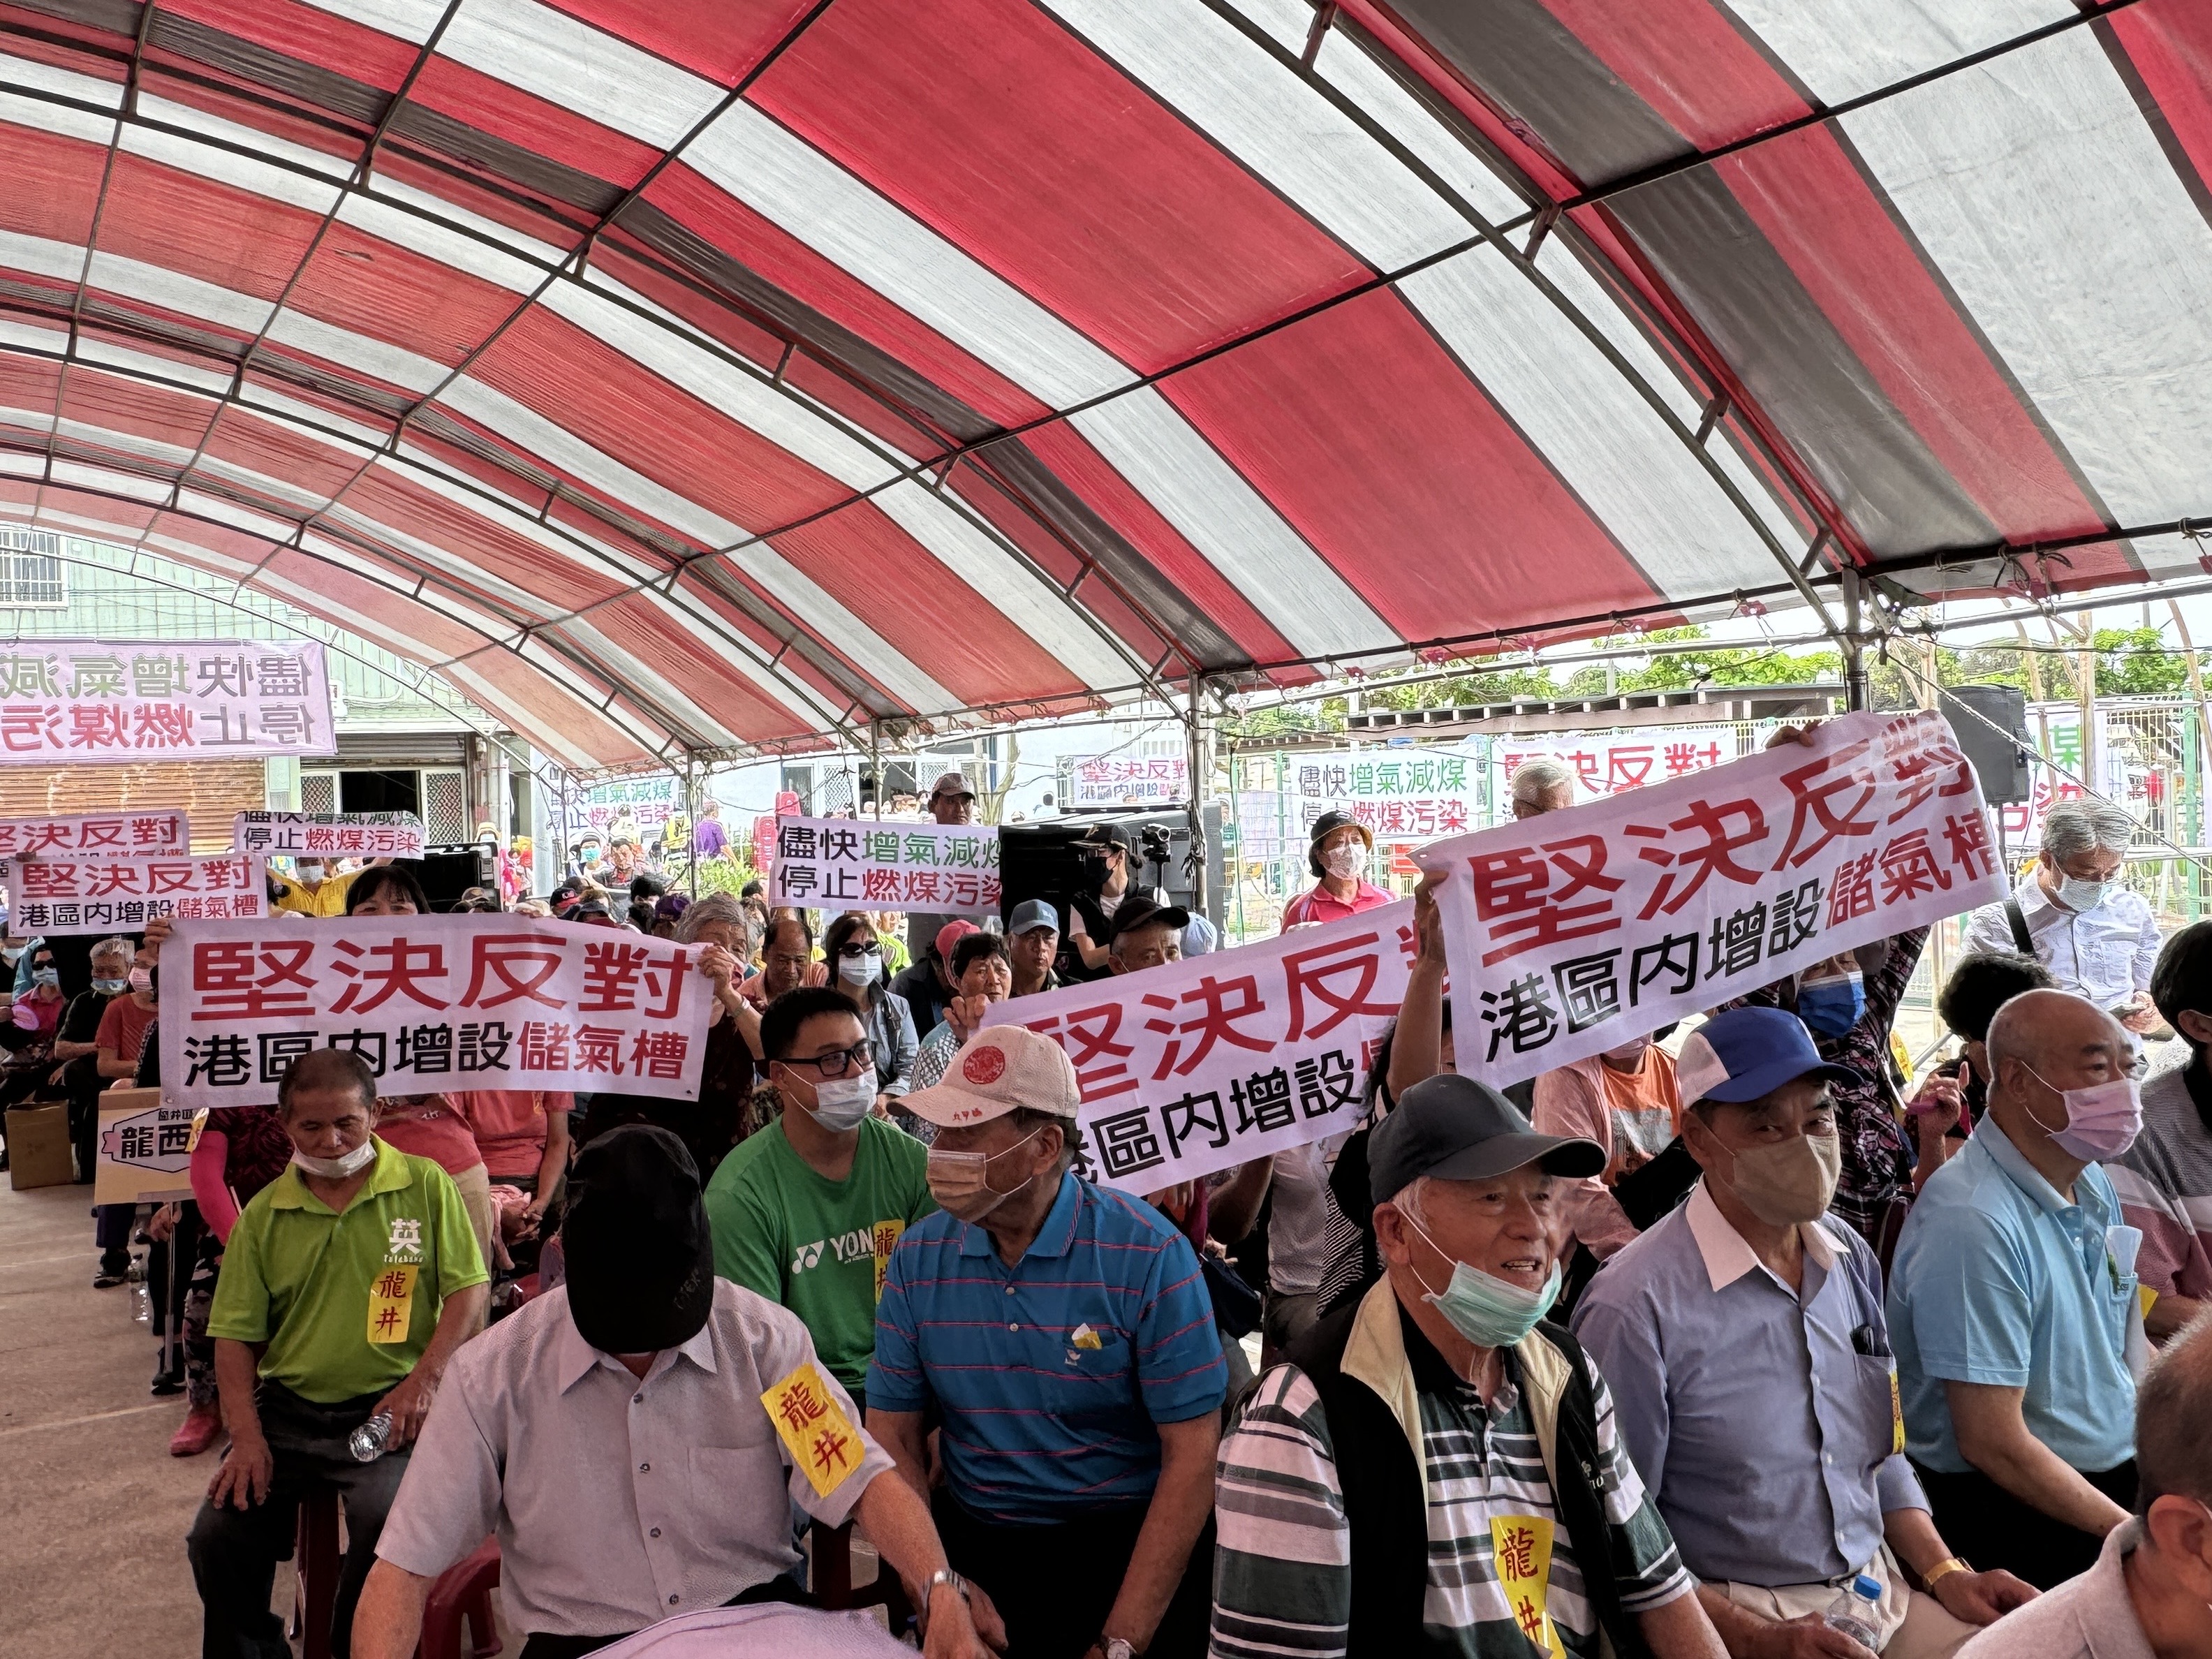 台中市民反对在台中港区内增设4座天然气储槽。图／民众提供